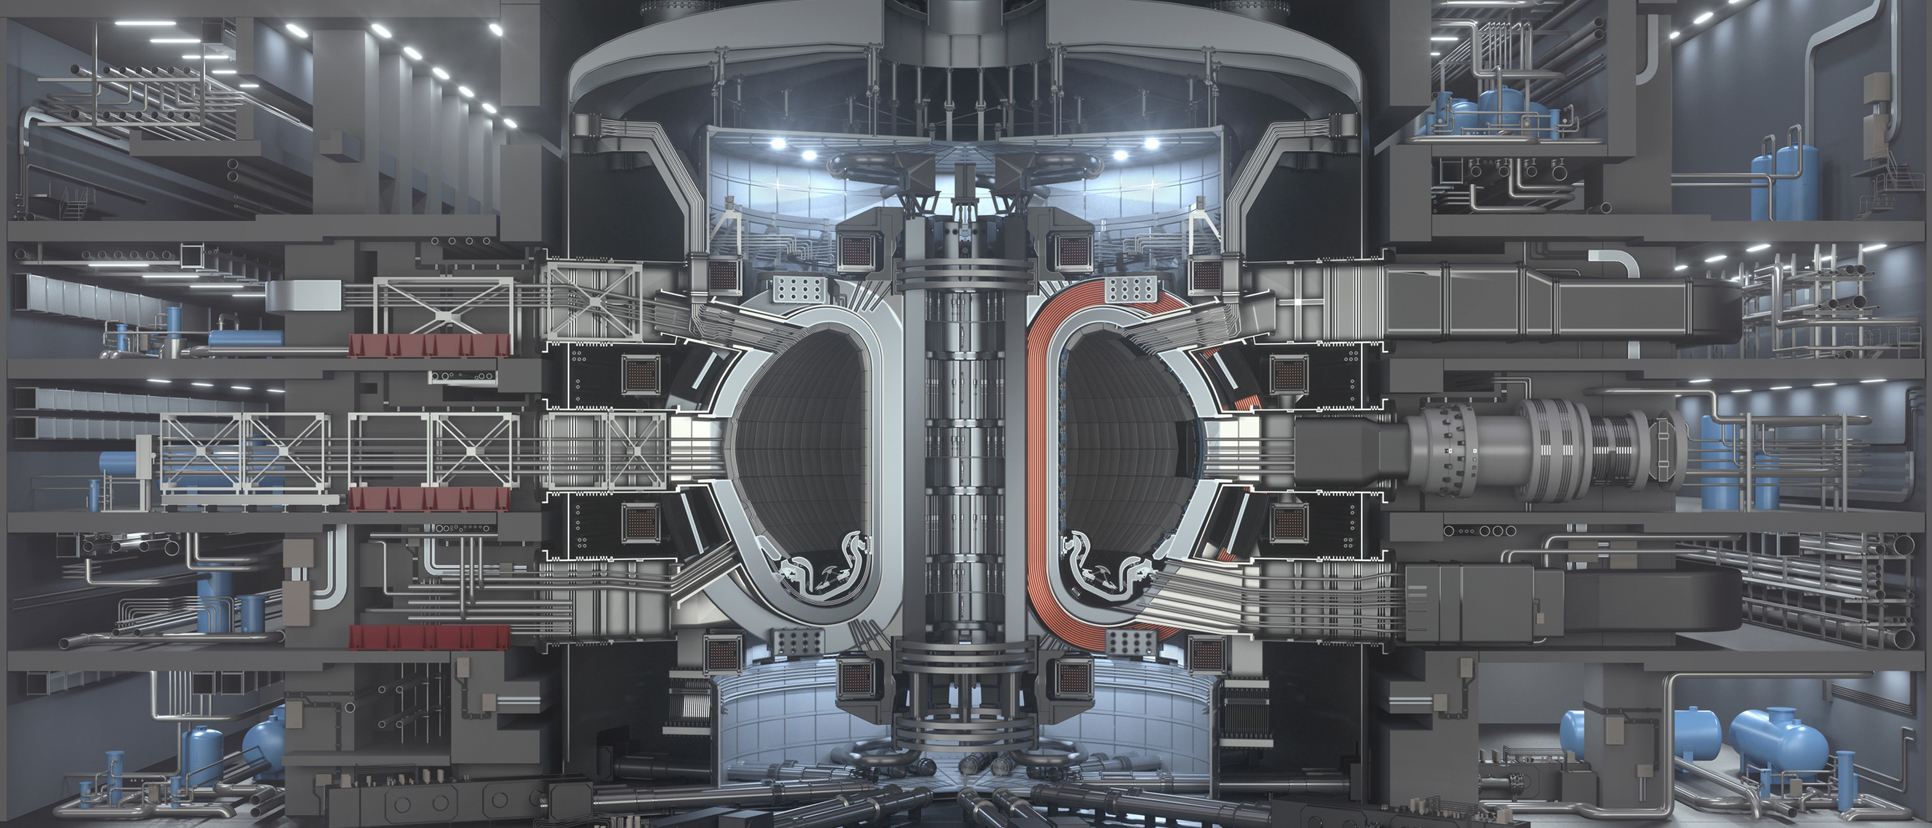 Fusionskraftsreaktorn ITER, ser ut som en stor maskin. 